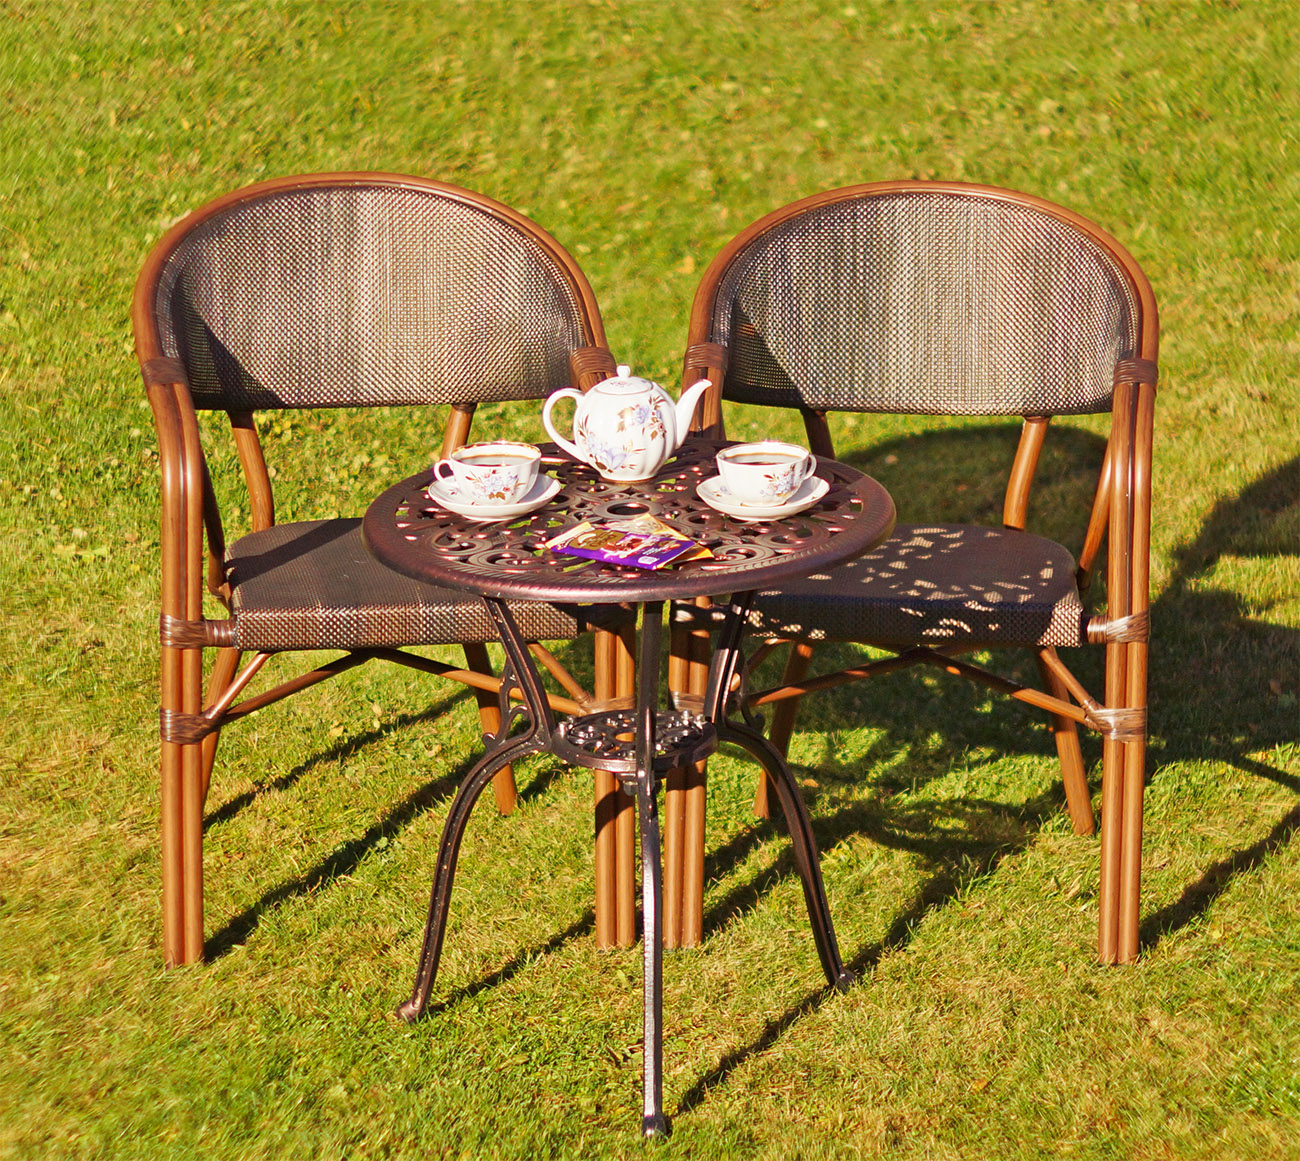 Мебель для летних веранд кафе, круглый садовый стол из литого алюминия, чайный комплект мебели для дачи, плетёные кресла в Москве недорого, уличная мебель